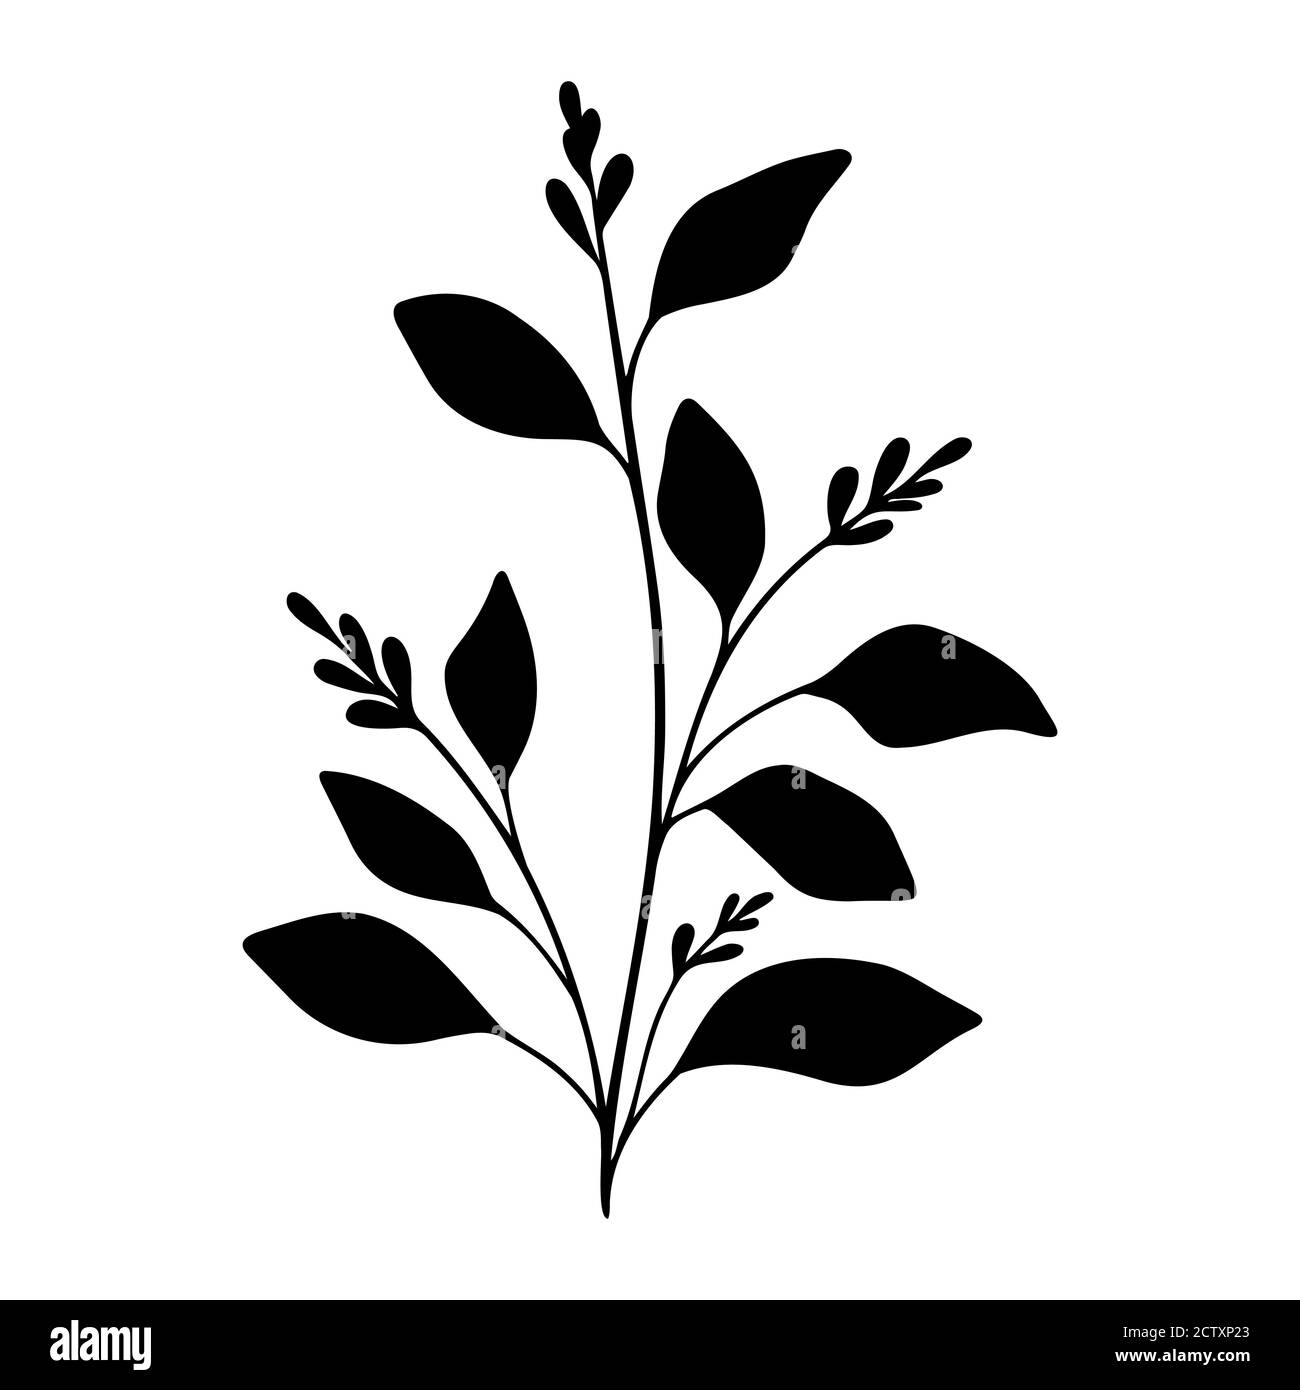 Verzweigungen Vektor florales Element. Einfacher schwarzer Baumteil mit Beeren und Blättern. Handgezeichnete Pflanze. Stock Vektor